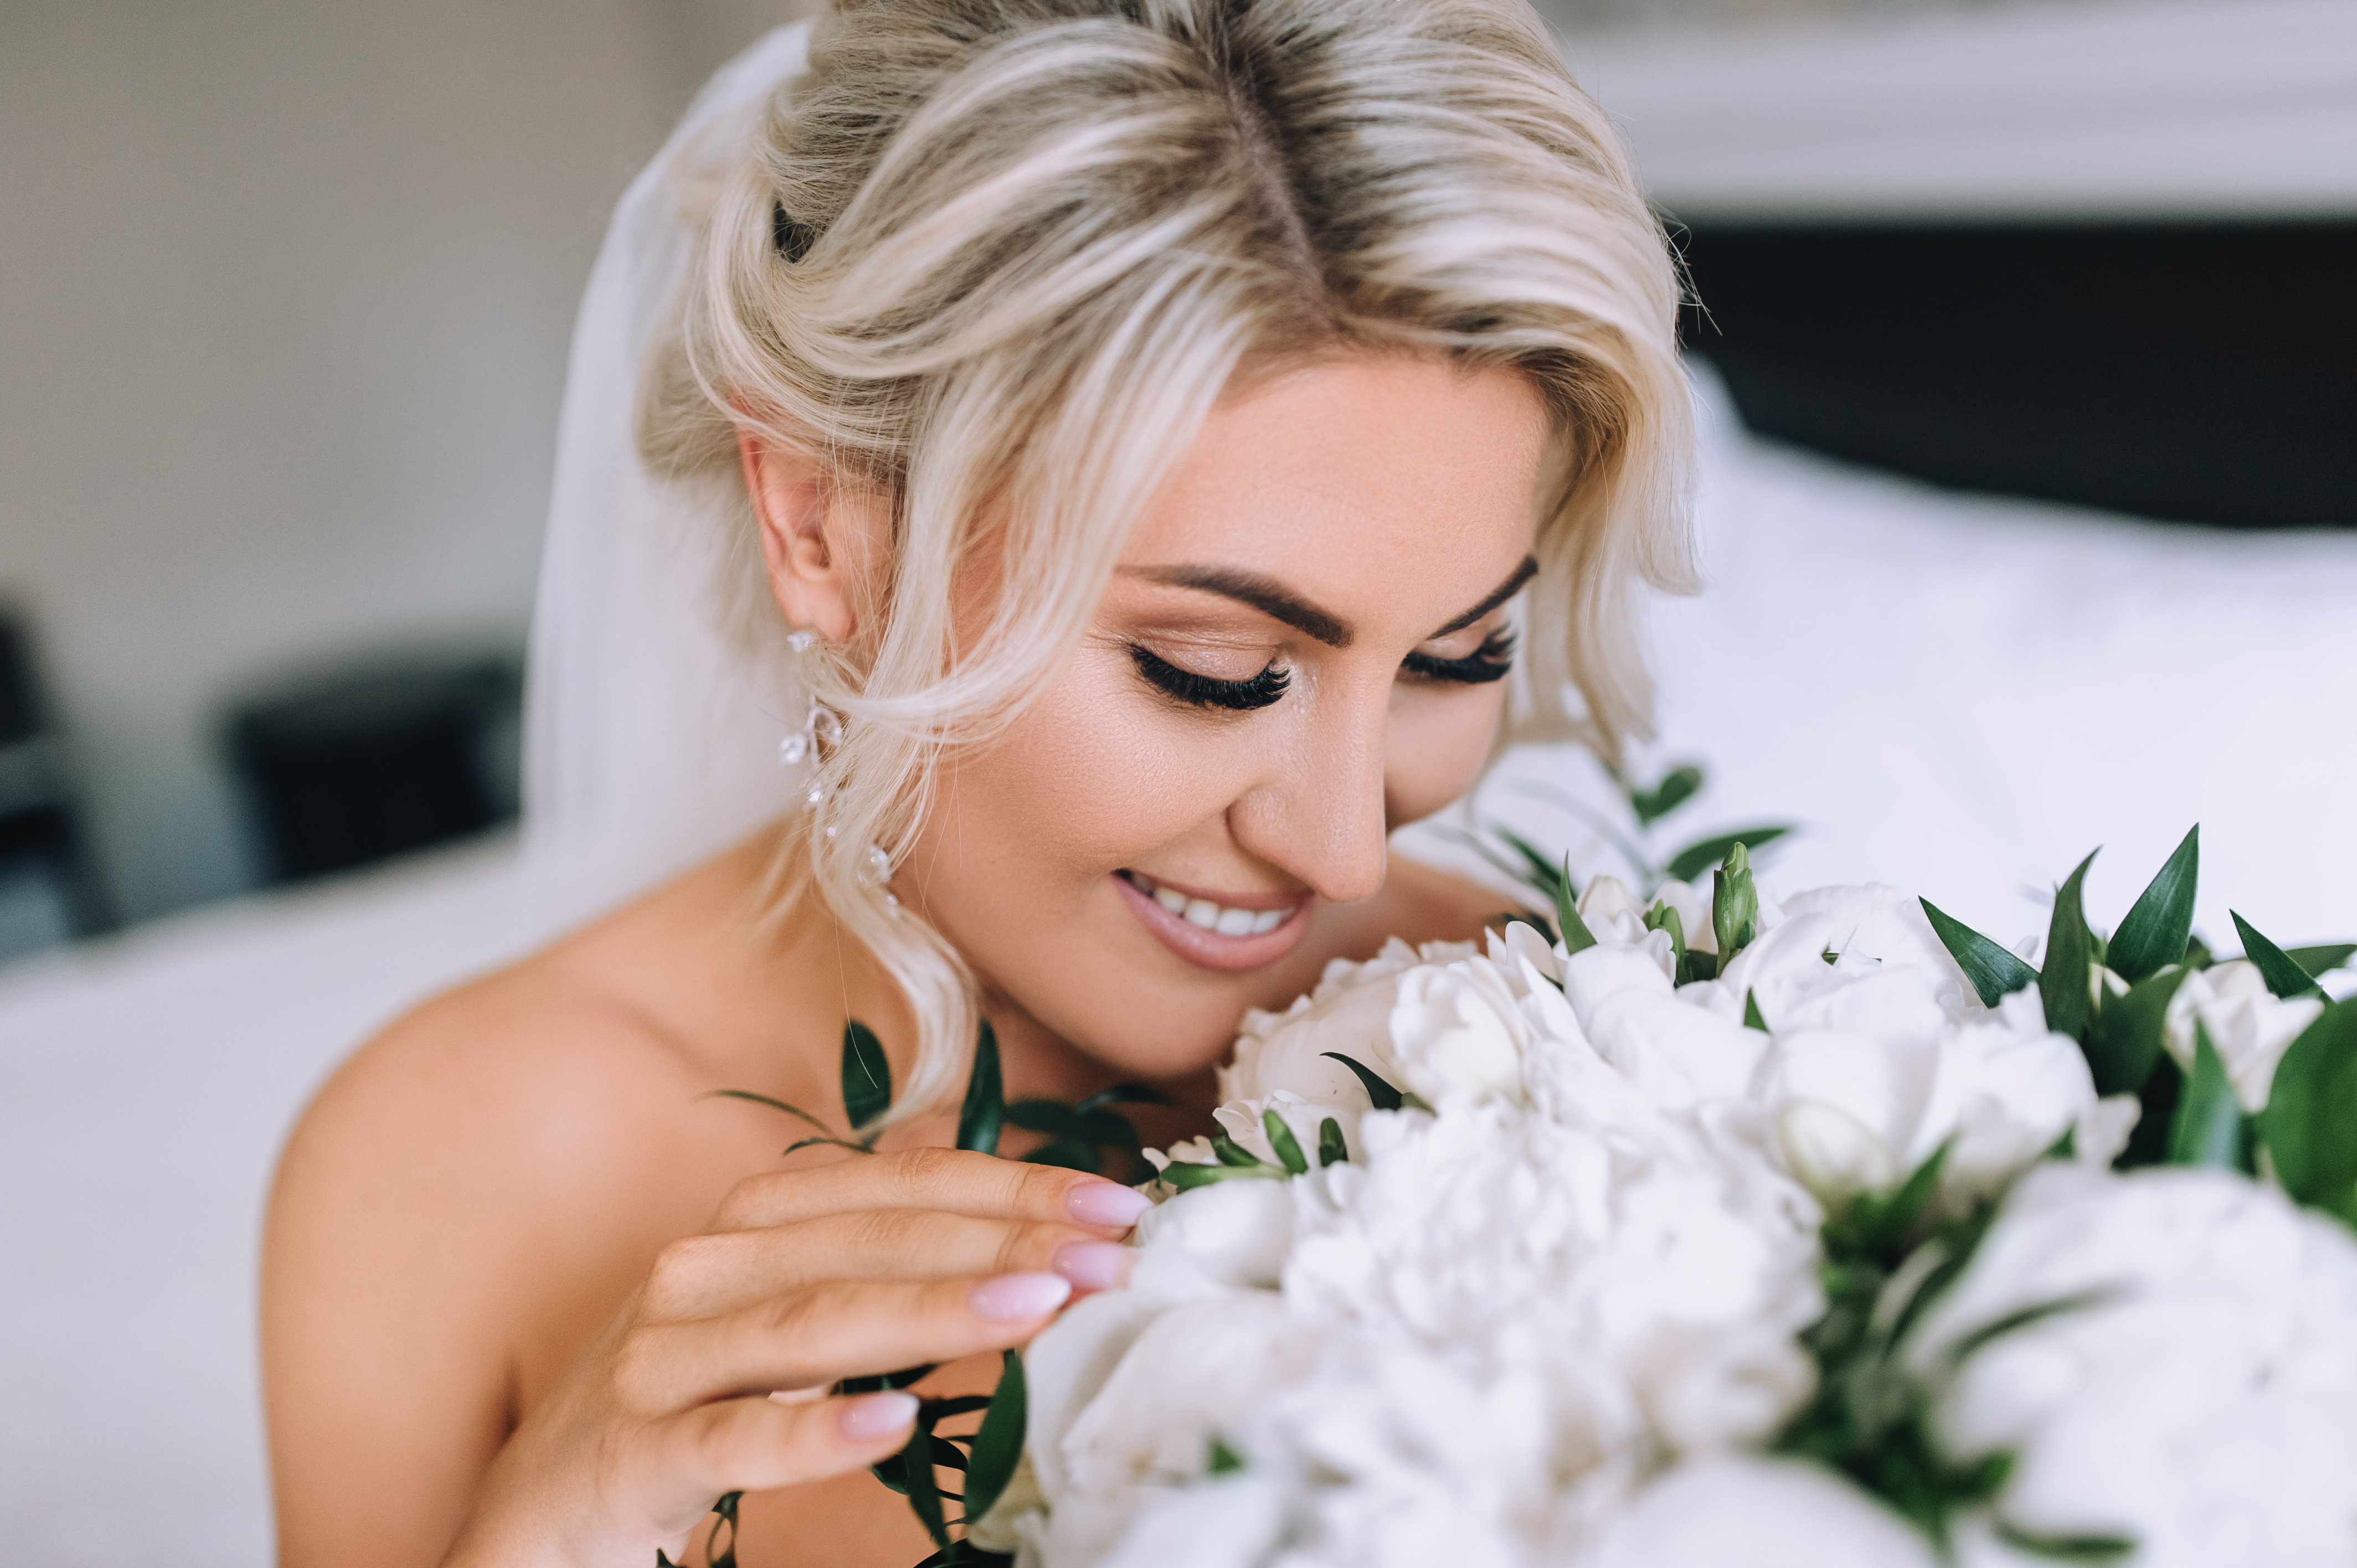 Ein Bild von einer glücklichen Braut an ihrem Hochzeitstag | Quelle: Shutterstock